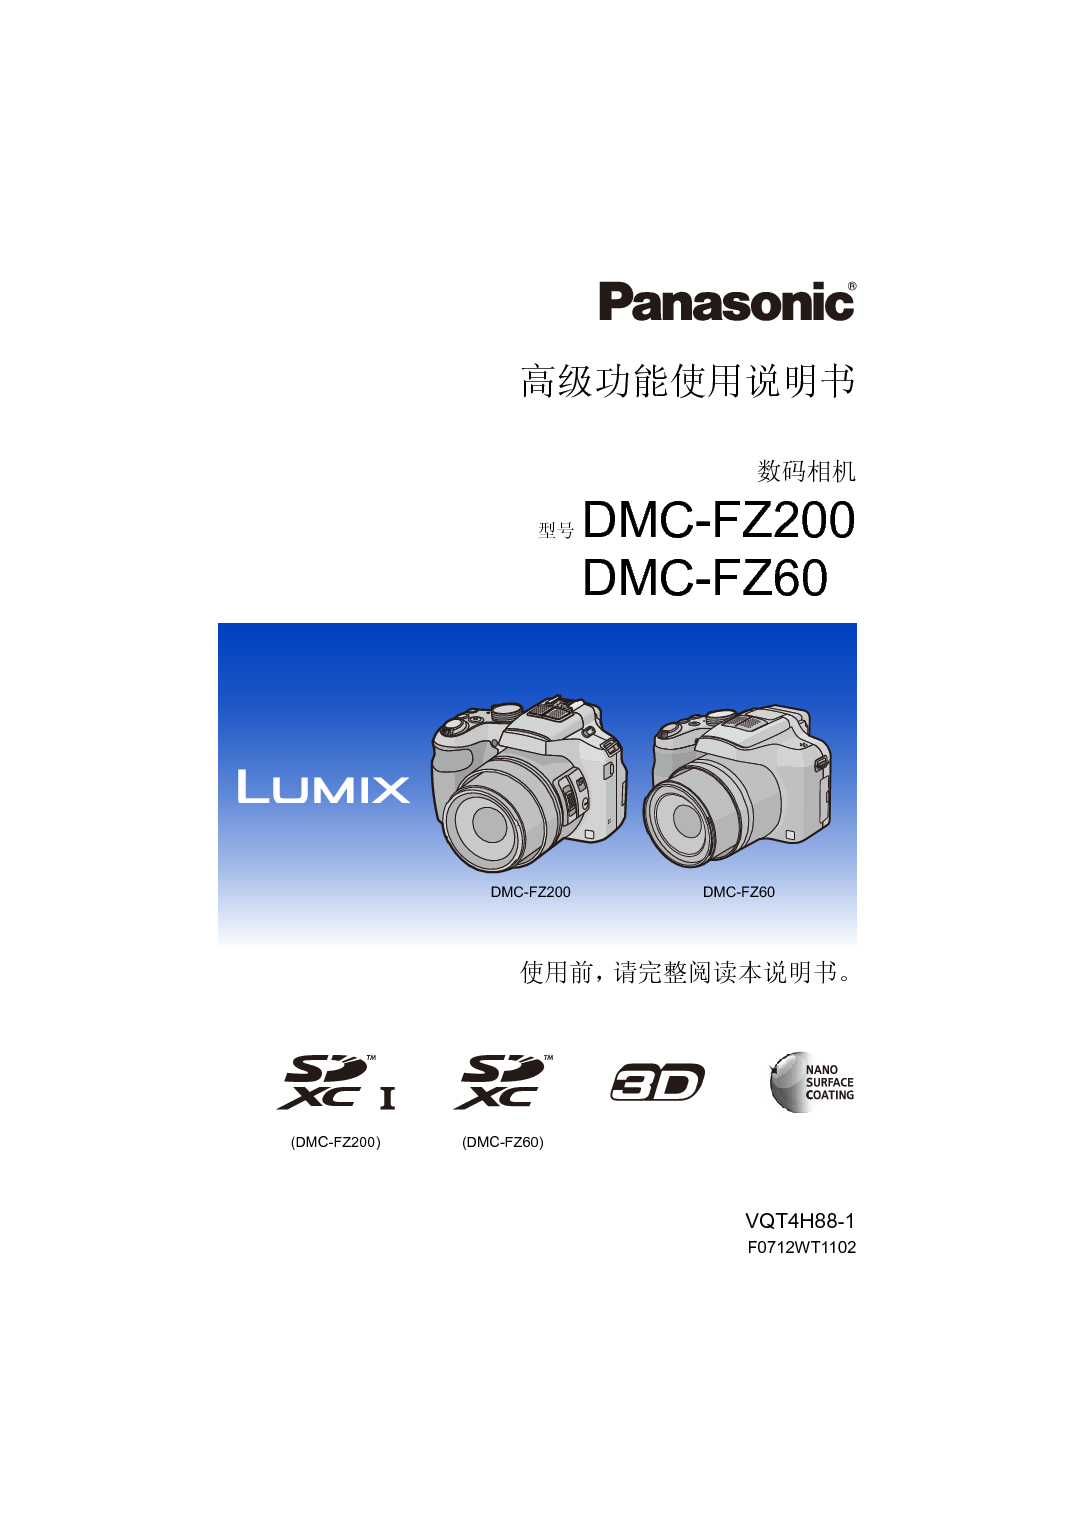 松下 Panasonic DMC-FZ200GK 高级说明书 封面